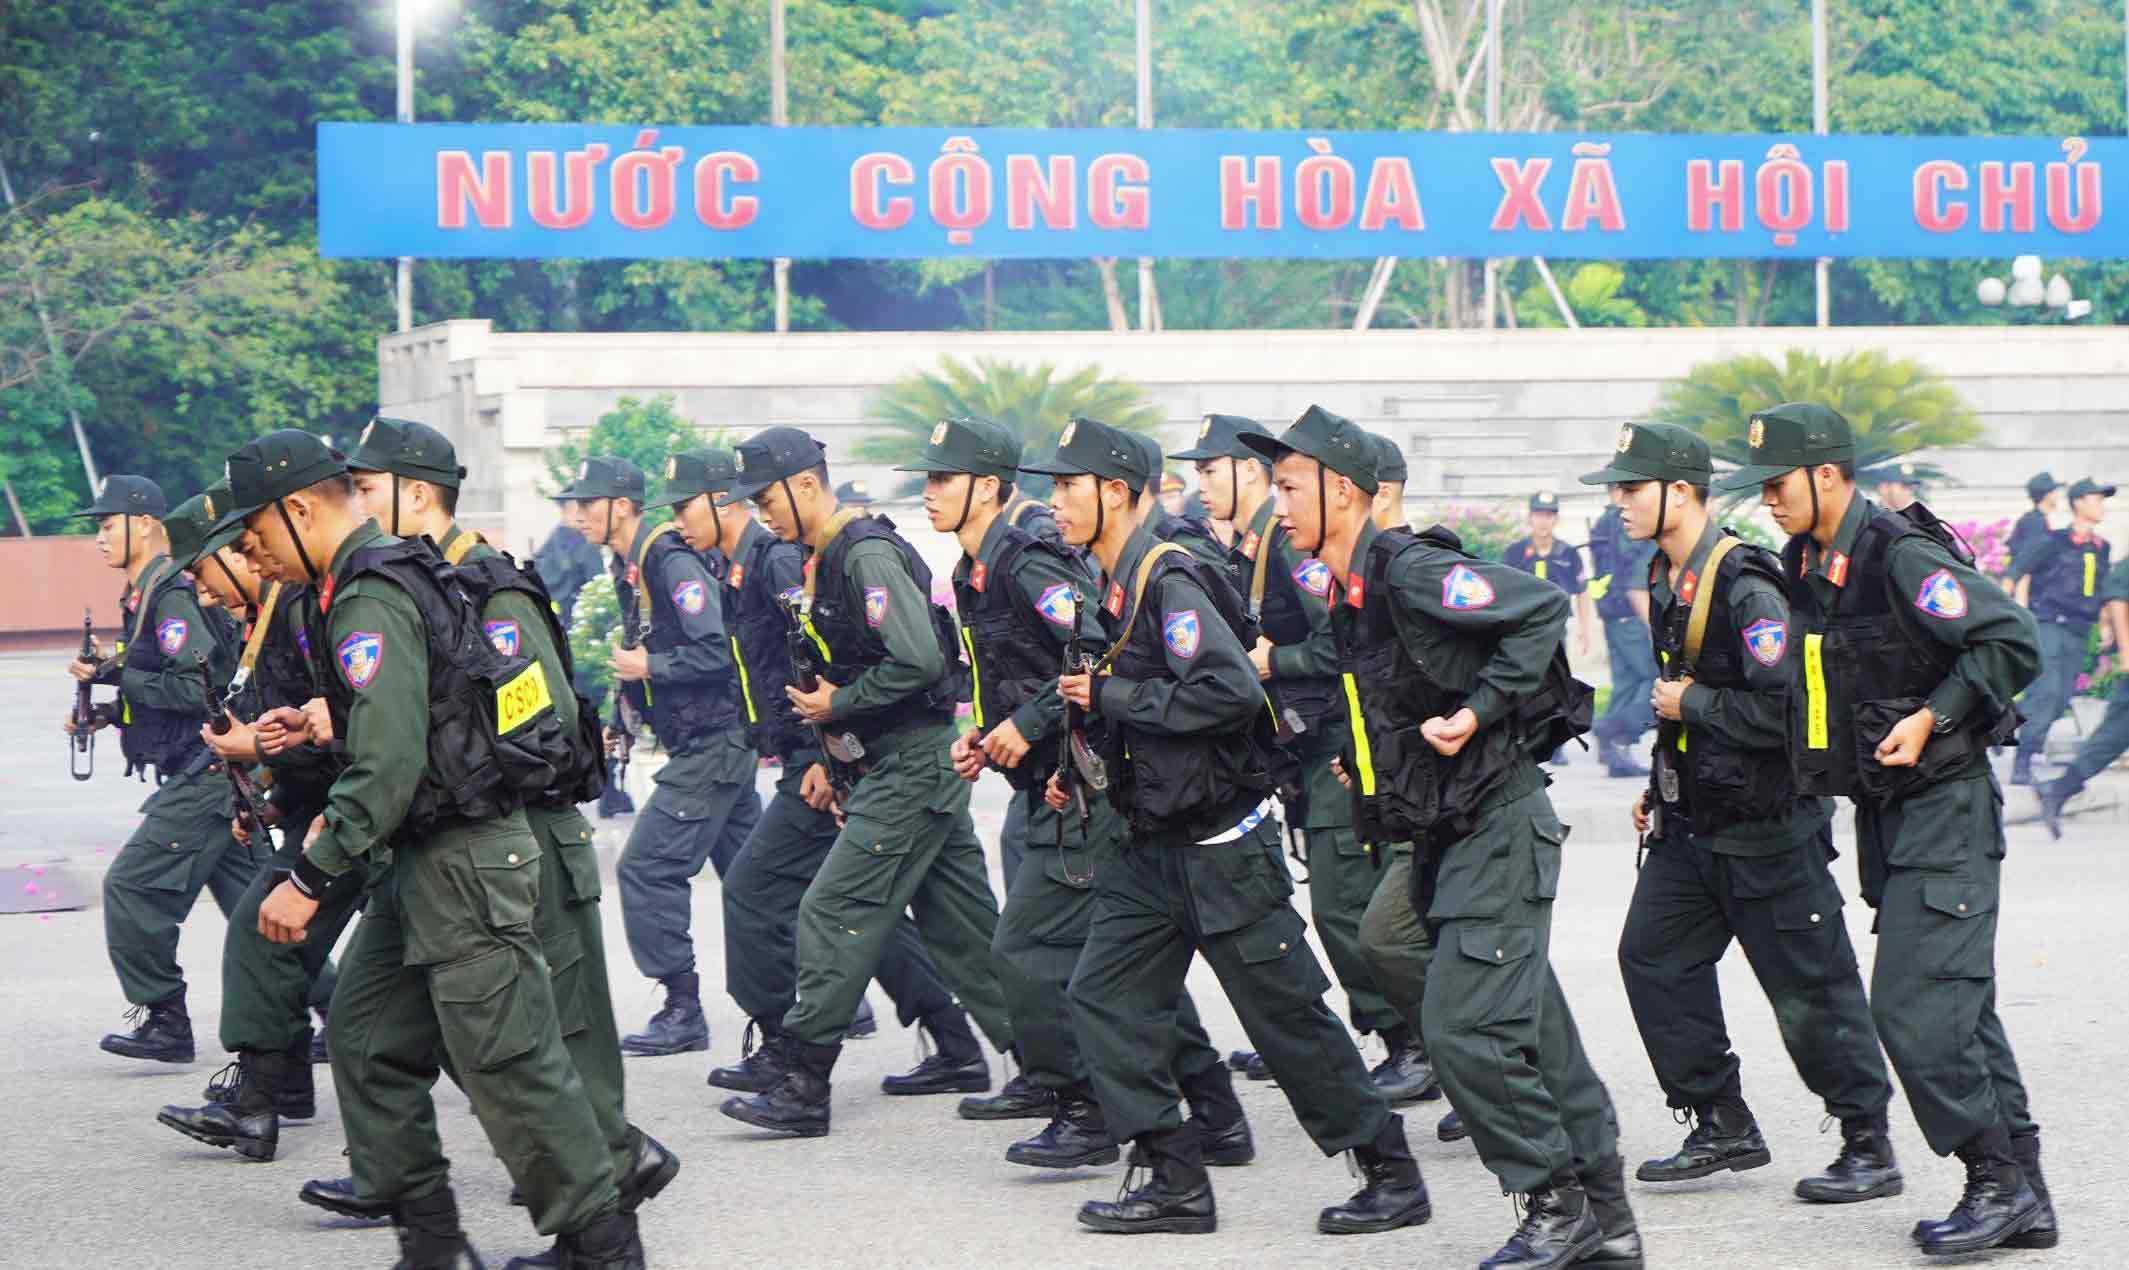 Lực lượng Cảnh sát cơ động Nghệ An biểu diễn tại sự kiện. Ảnh: Quang Đại